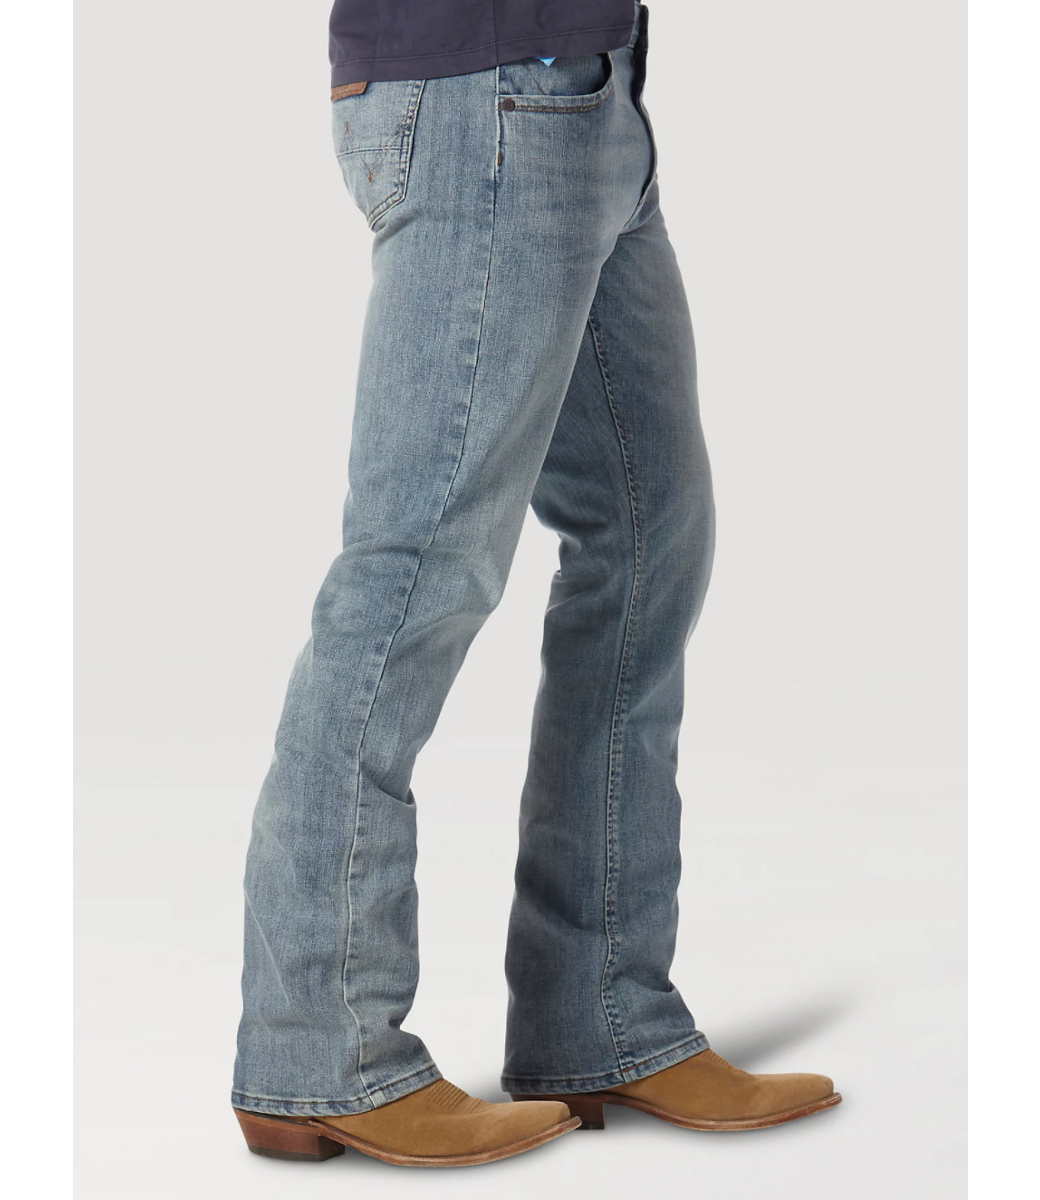 Retro Slim Boot Cut Jeans